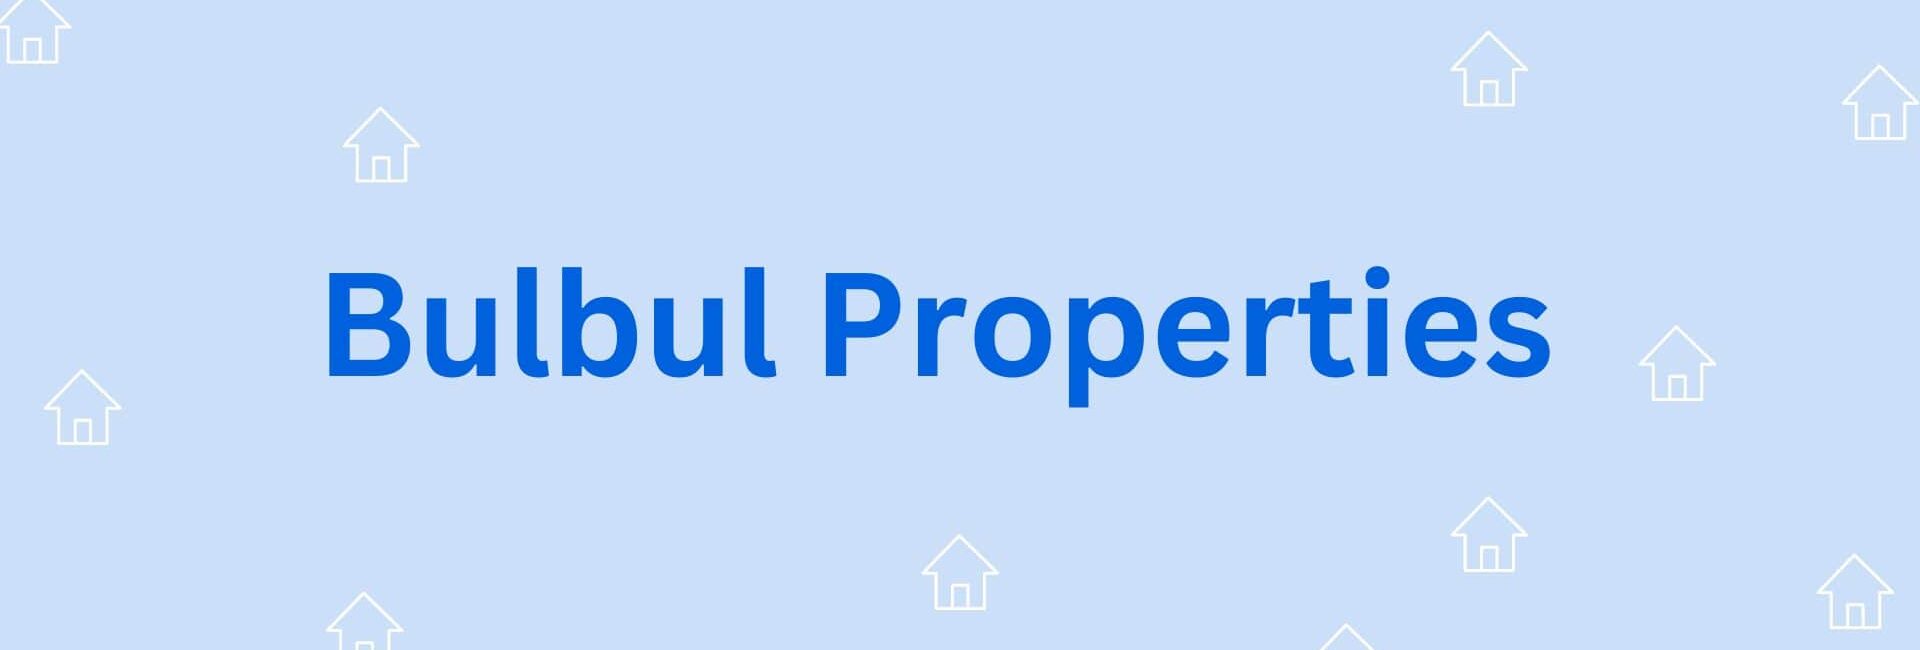 Bulbul Properties - Property Dealer in Hisar